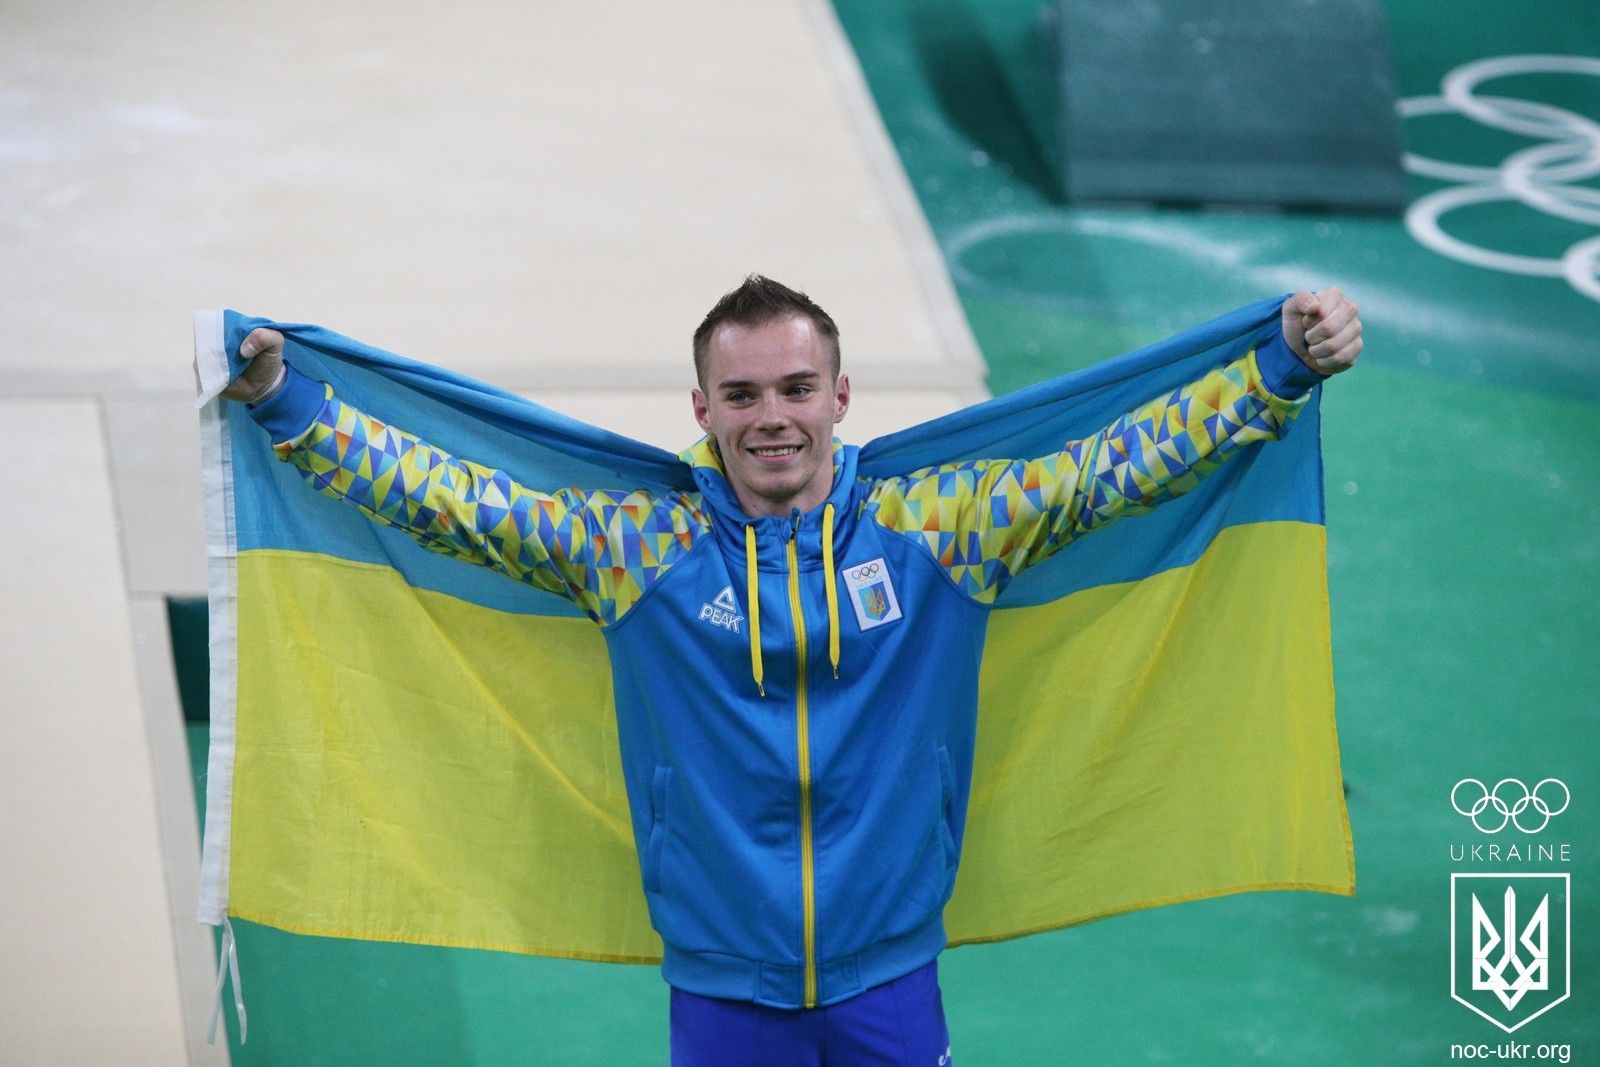 Олимпийского чемпиона из Украины Верняева отстранили от соревнований: без объяснения причин